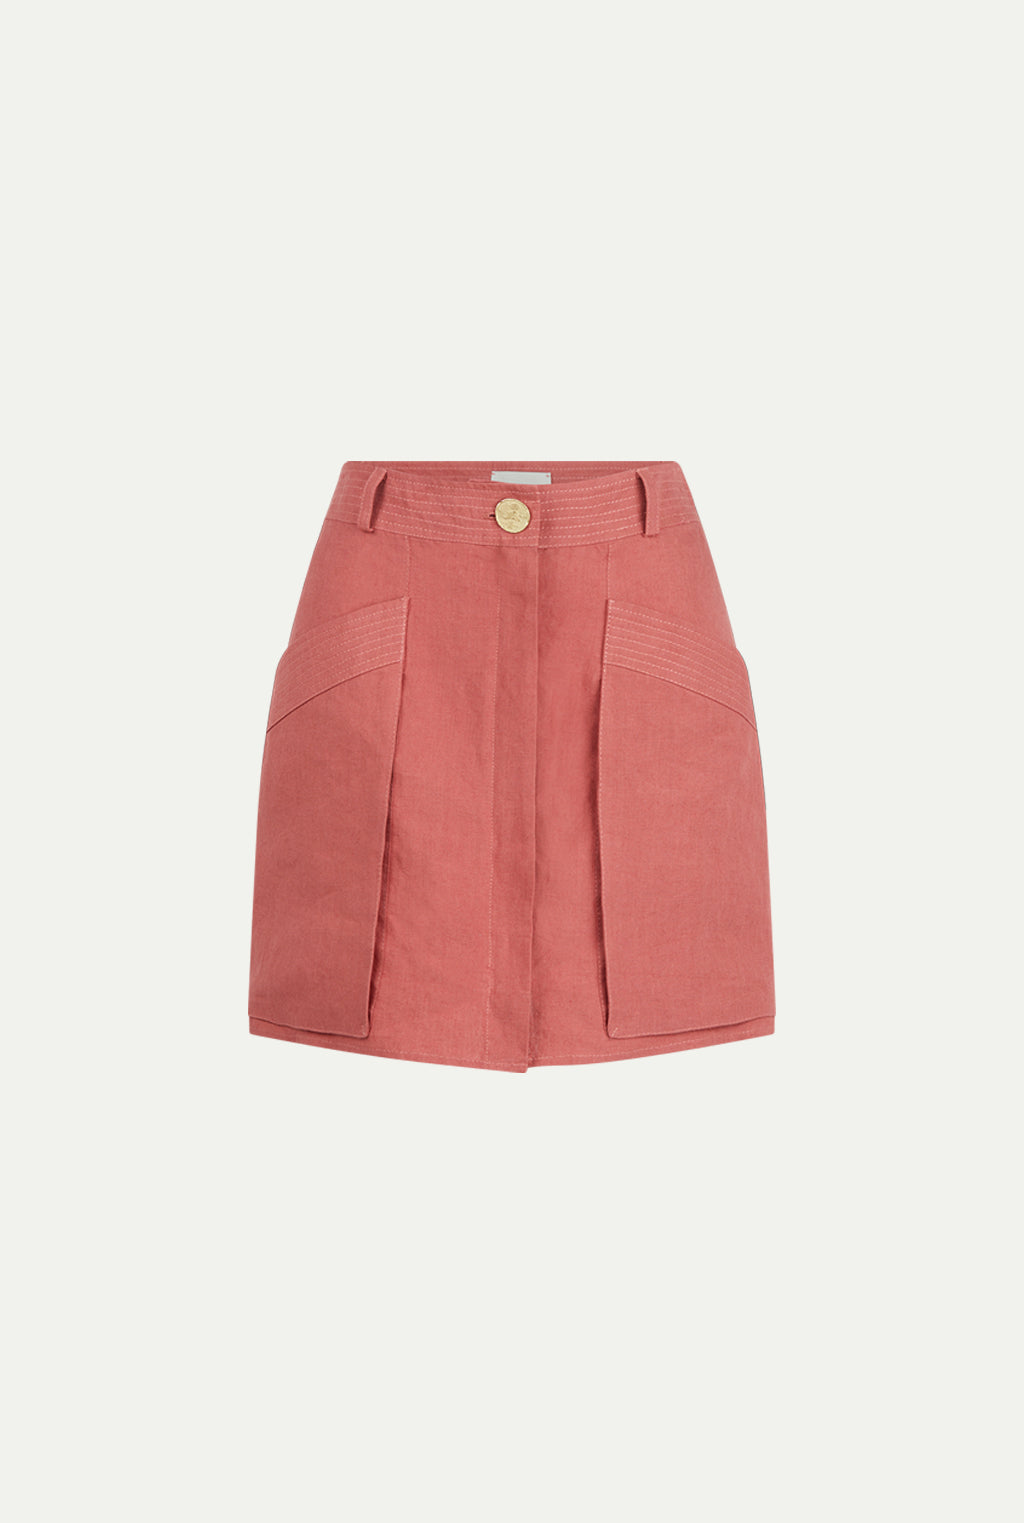 IZBAT linen skirt